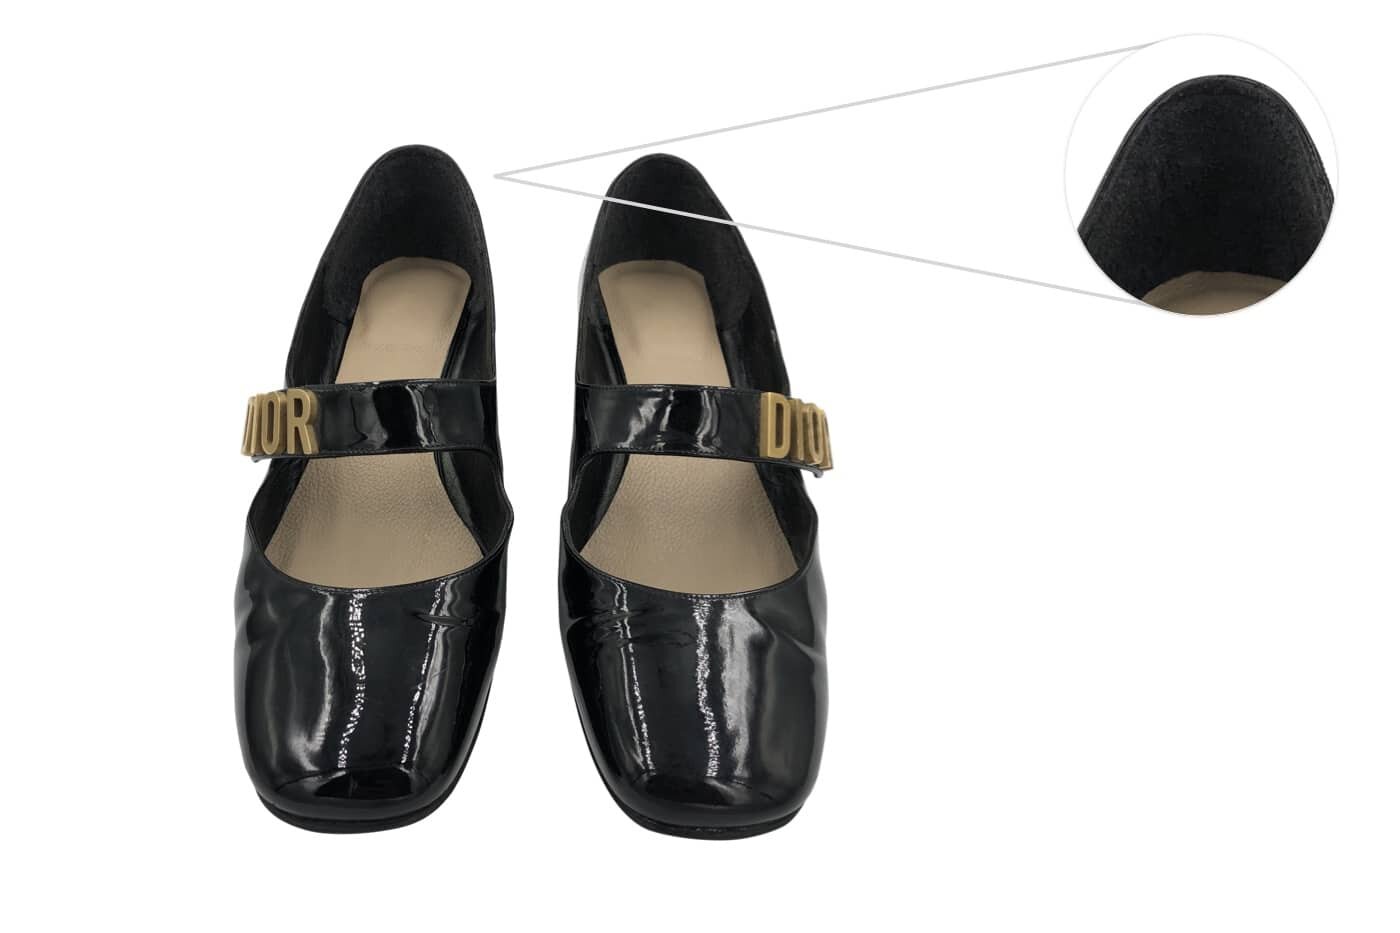 Jual Jadior Heels Dior Mary Jane Shoes Sepatu Tinggi Wanita Super Mirror  Quality Kulit Asli Womans Shoes di lapak GUGLING SHOP  Bukalapak